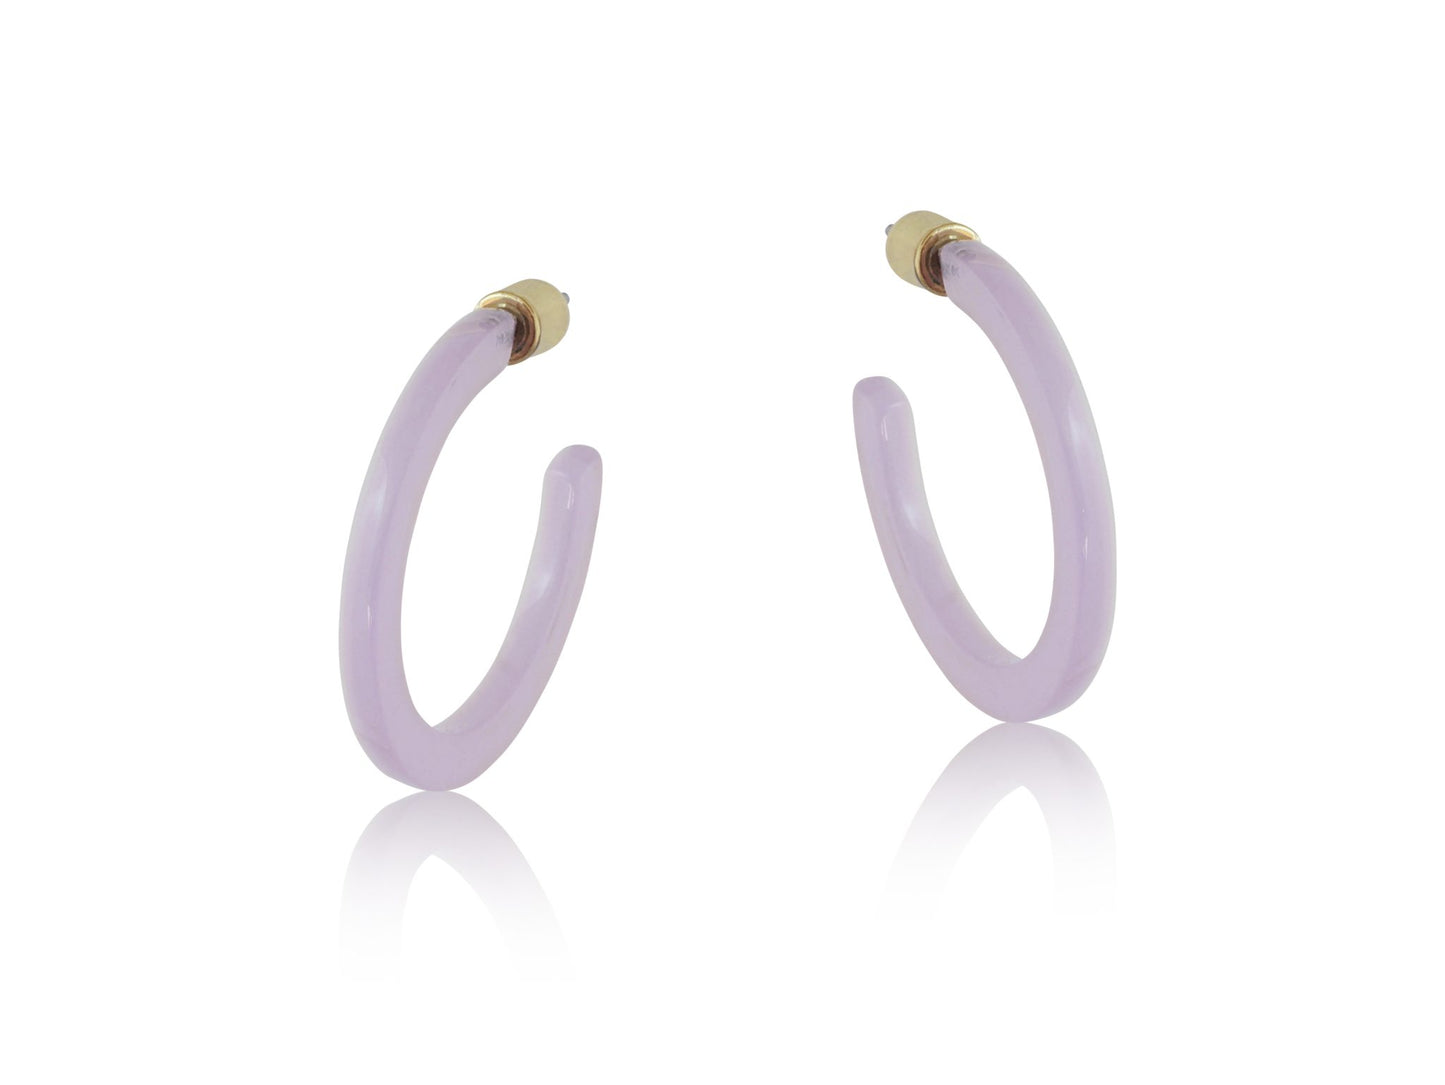 Coloured hoop earrings - Melia